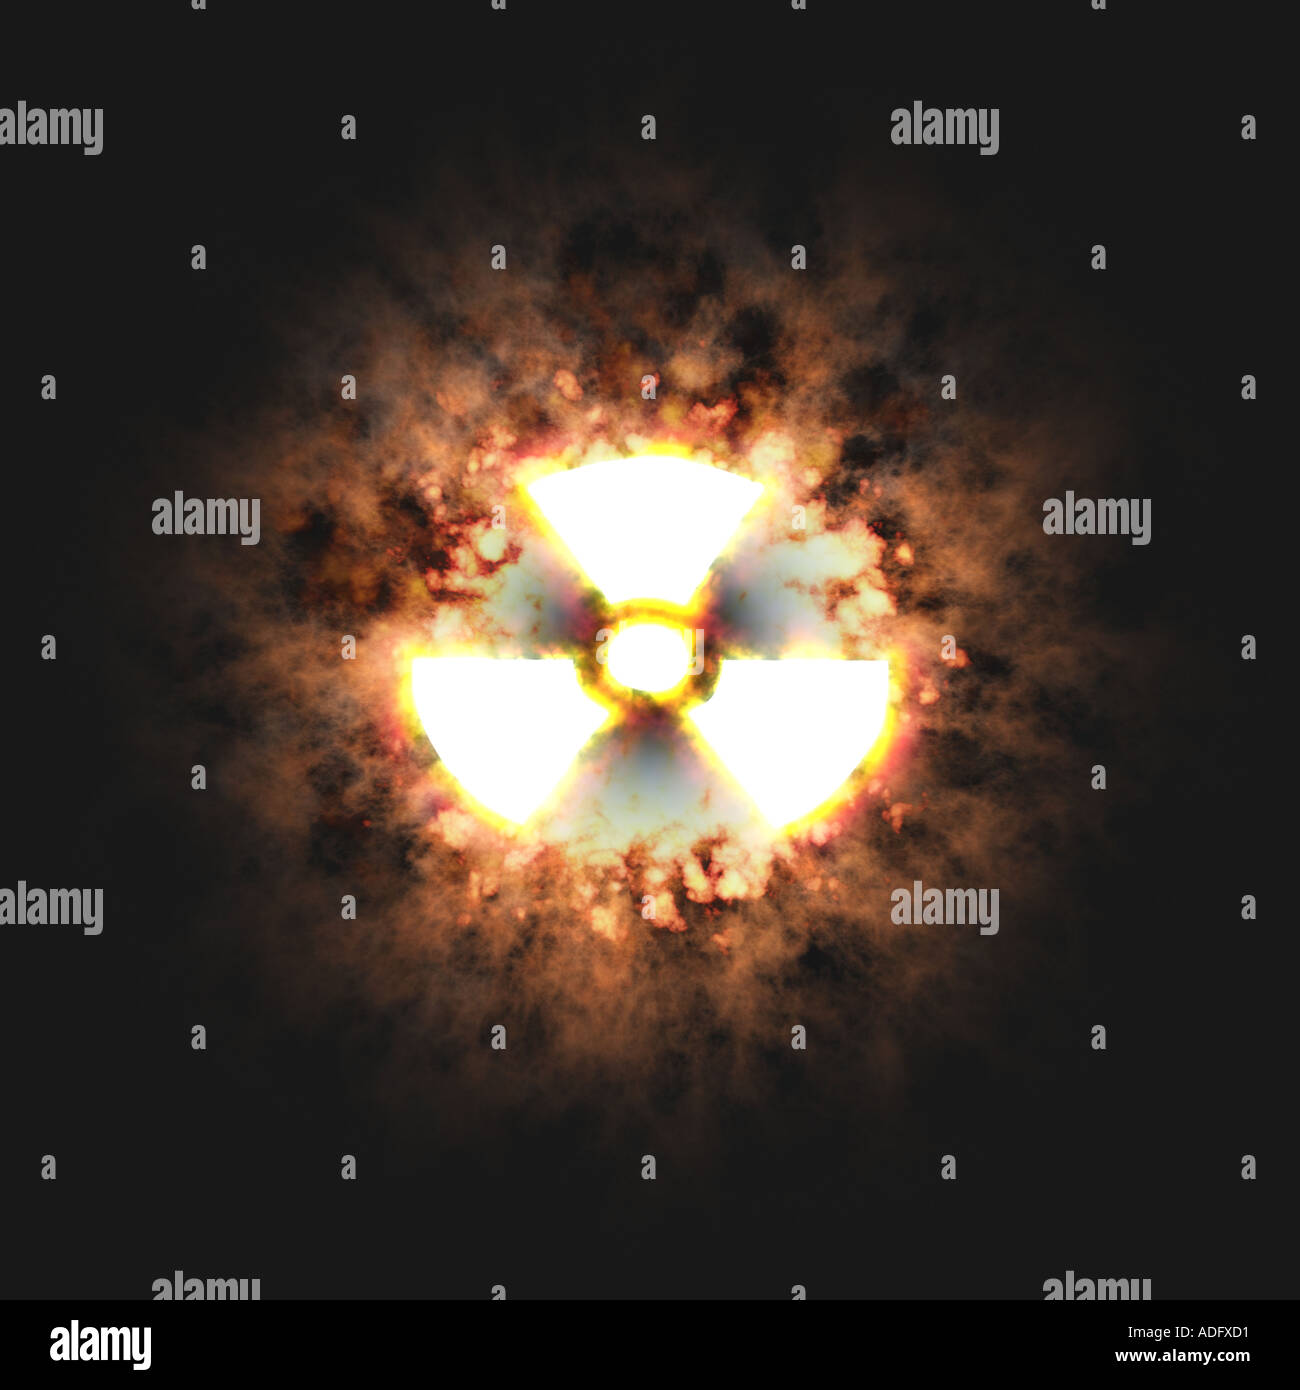 Imagen conceptual de la explosión nuclear de un arma de destruccion masiva Foto de stock